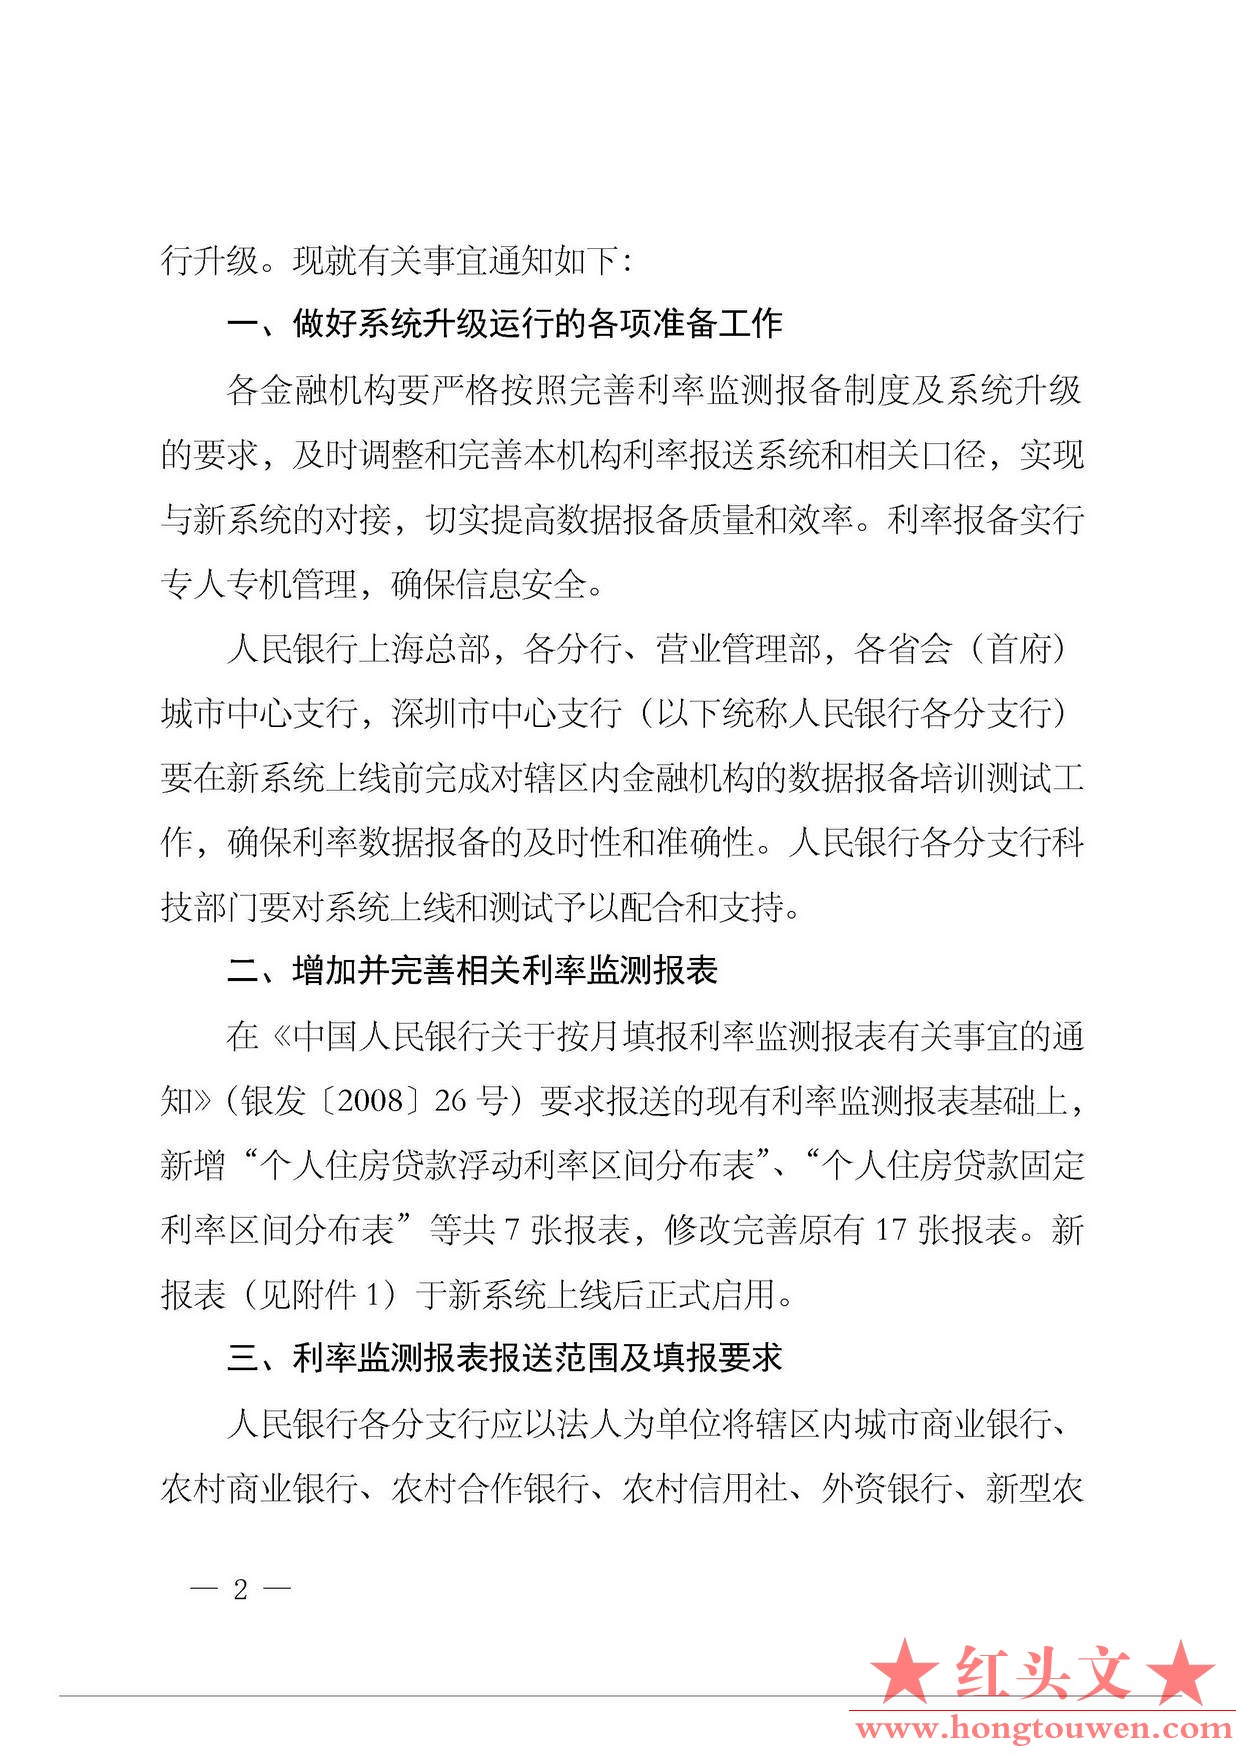 银发[2014]375号-中国人民银行关于进一步完善利率监测报备制度的通知_页面_2.jpg.jpg